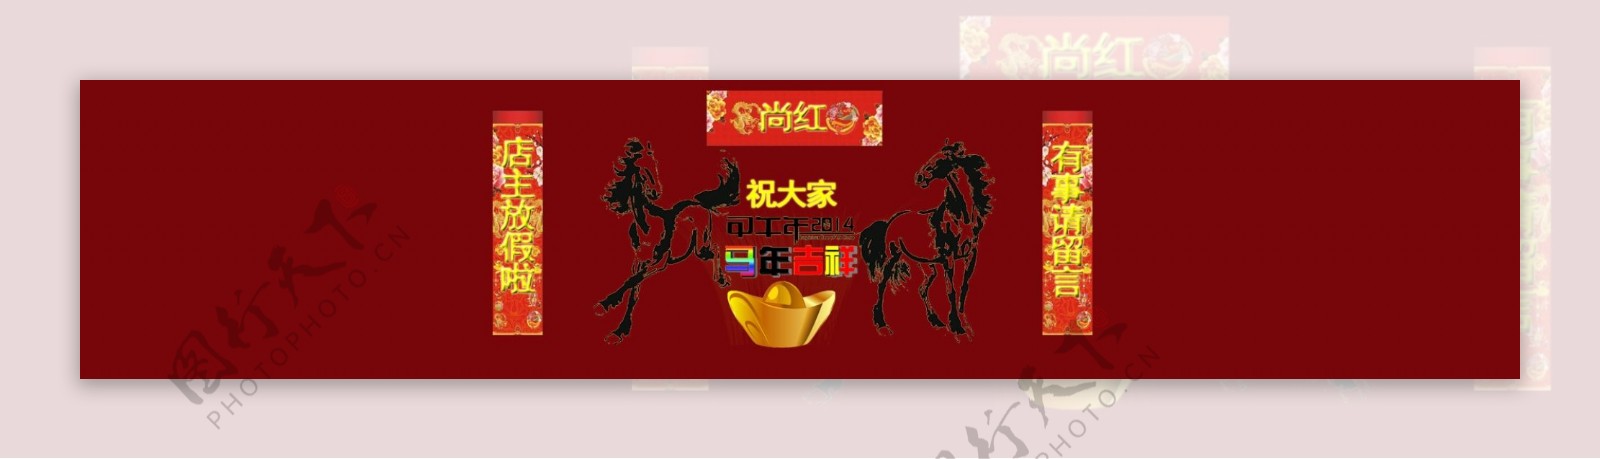 2014春节大海报红色调大气喜庆